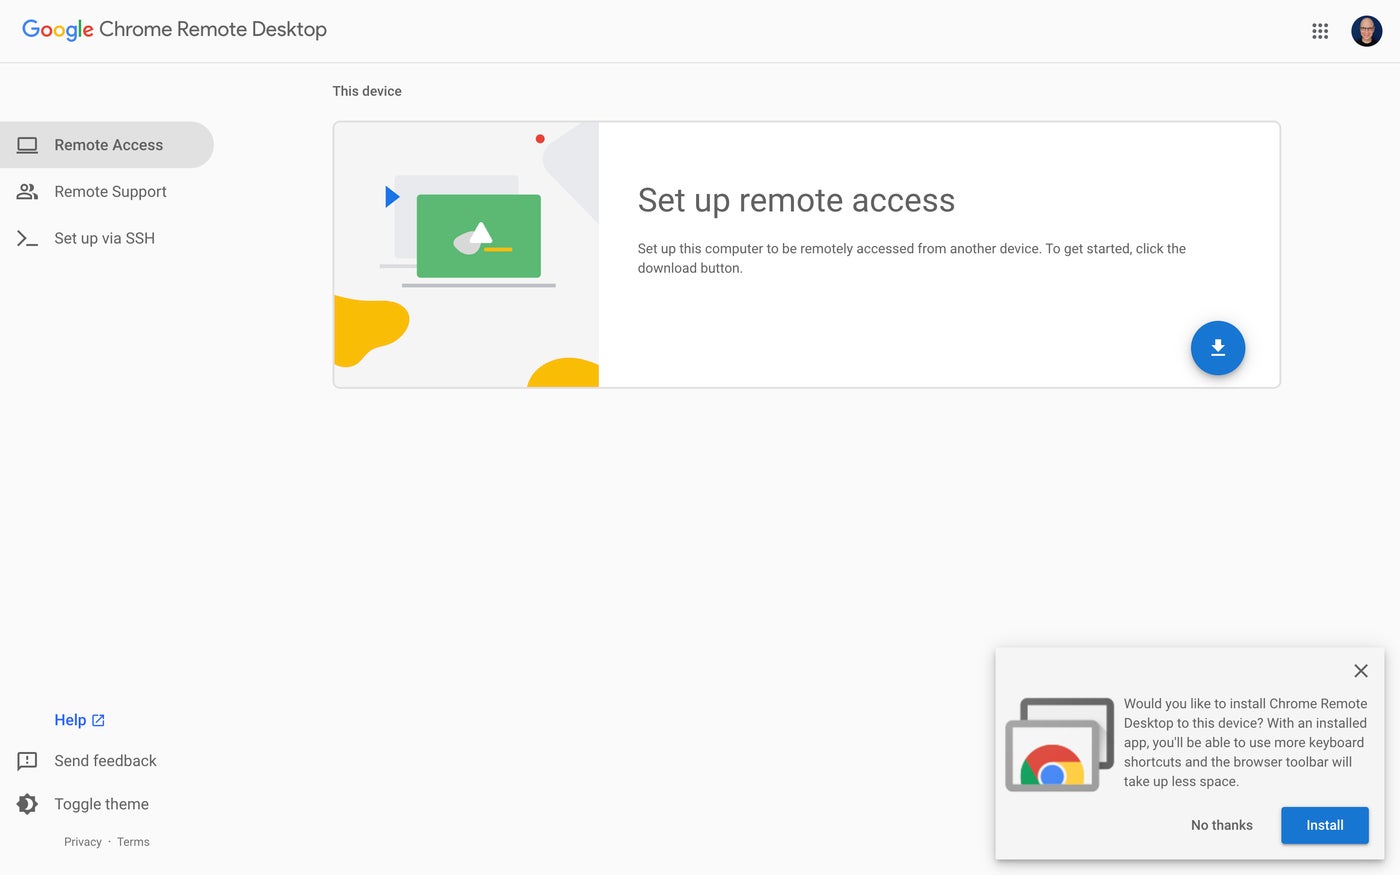 Chrome Remote Desktop configuration options to configure remote access